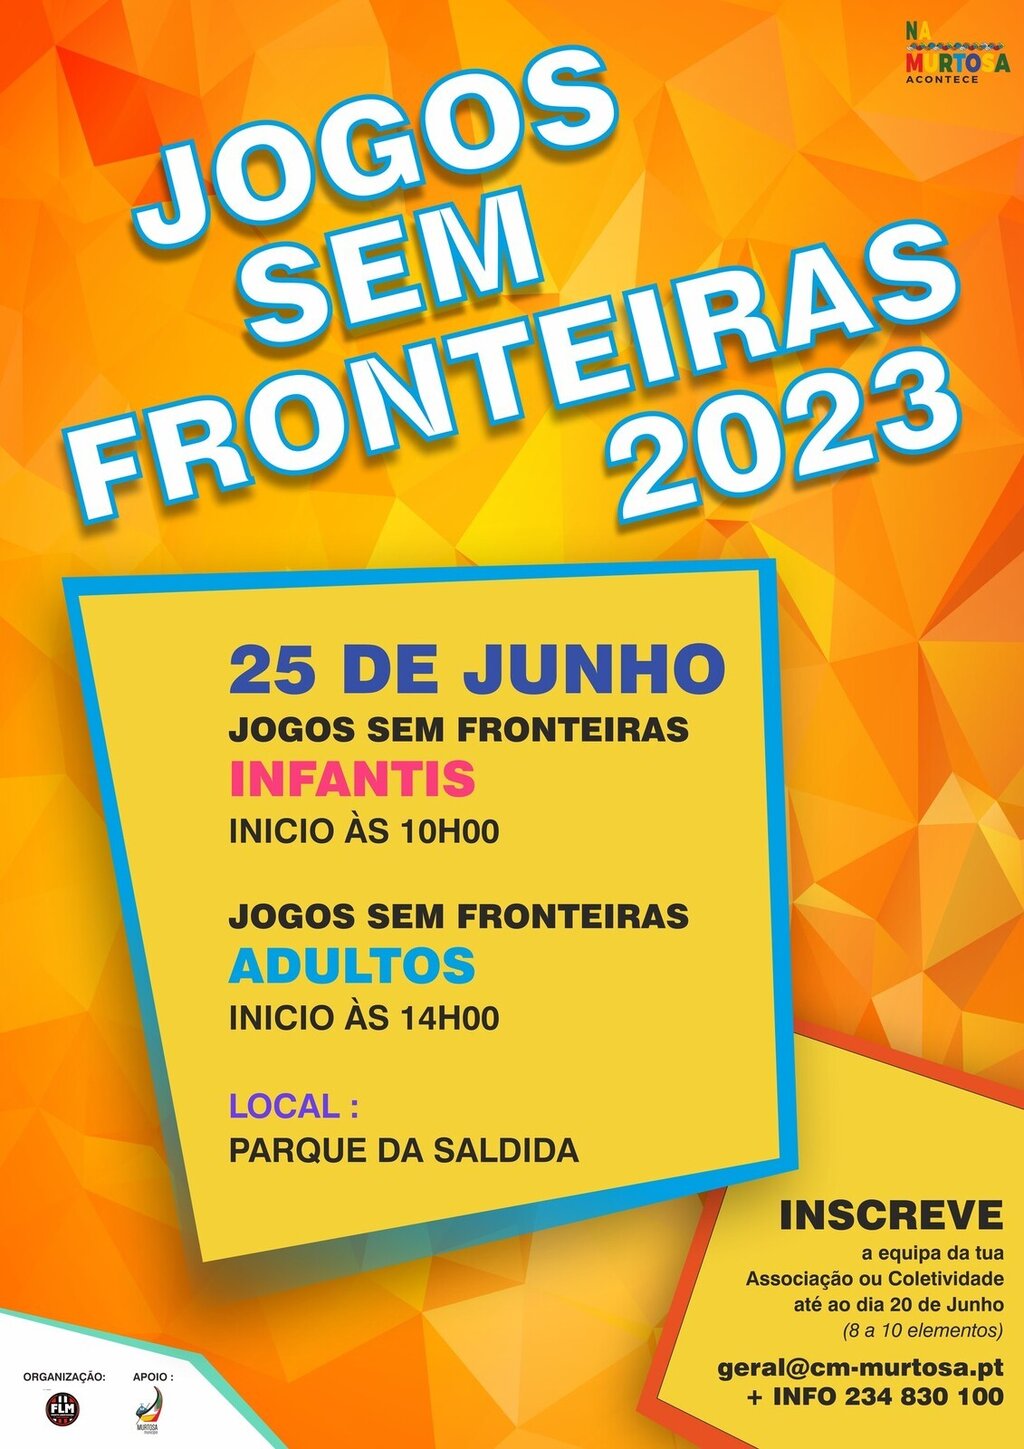  INSCRIÇÕES ABERTAS PARA OS JOGOS SEM FRONTEIRAS 3870